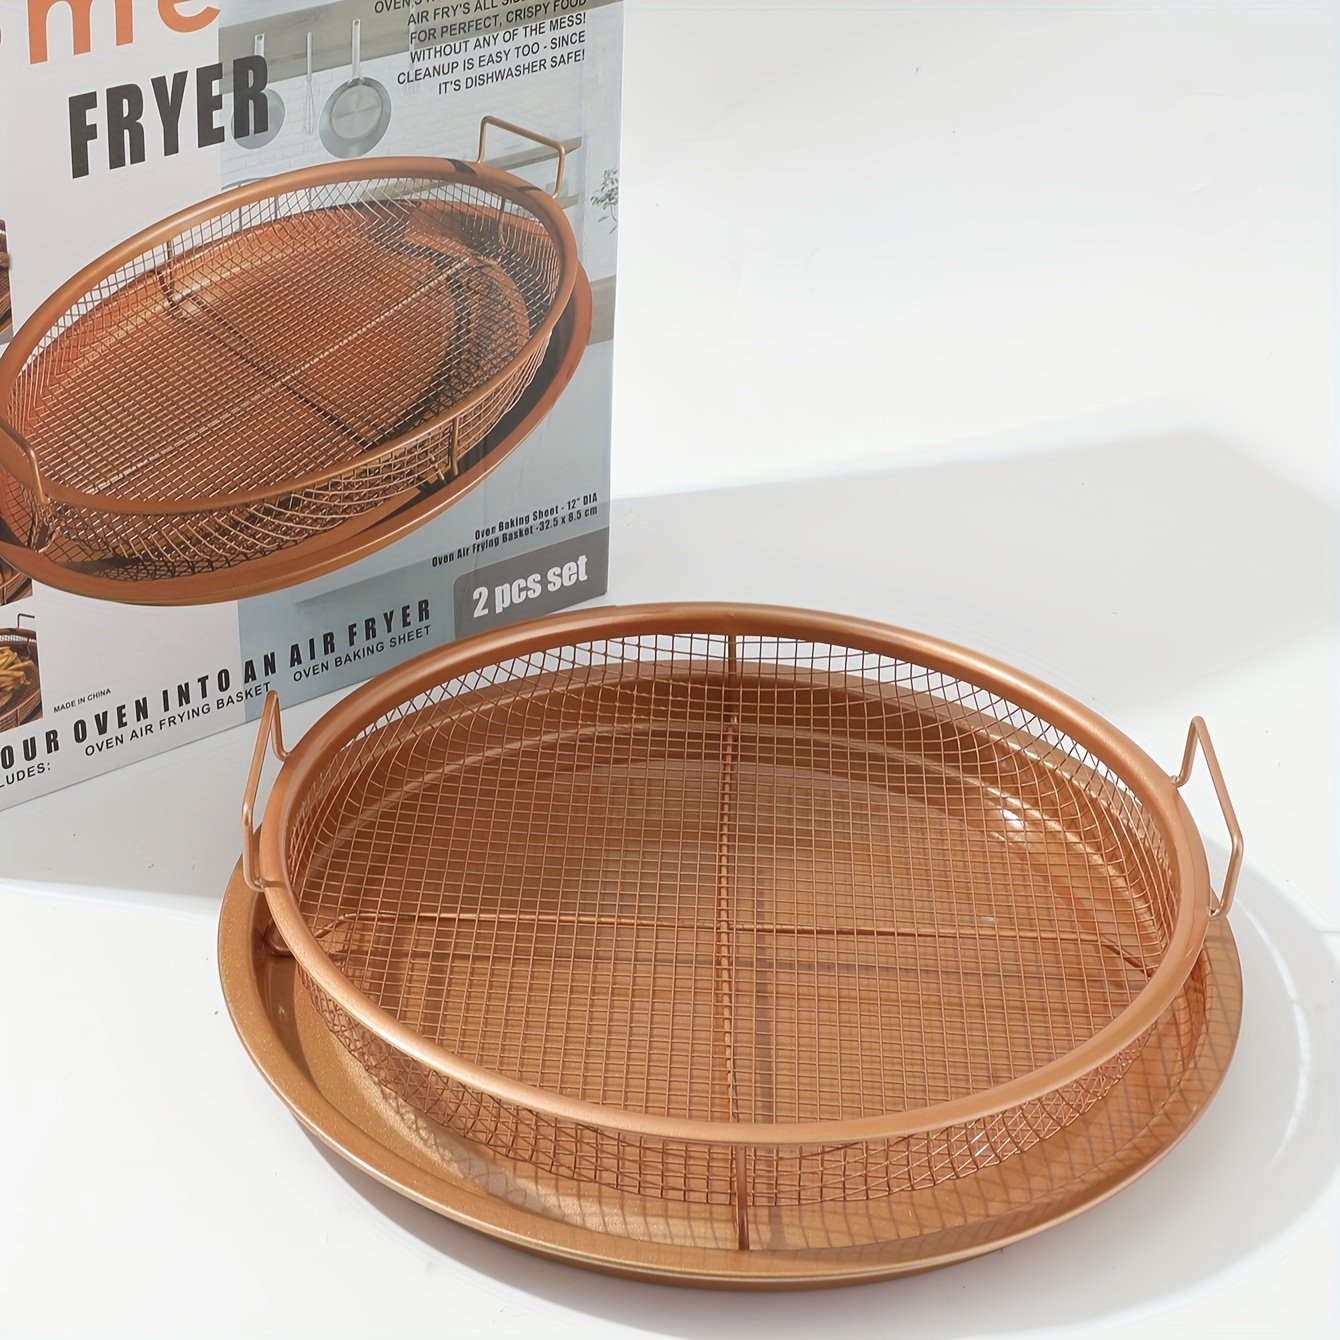 Copper Oven Air Fryer Non-Stick Circular Baking Sheet Crisper